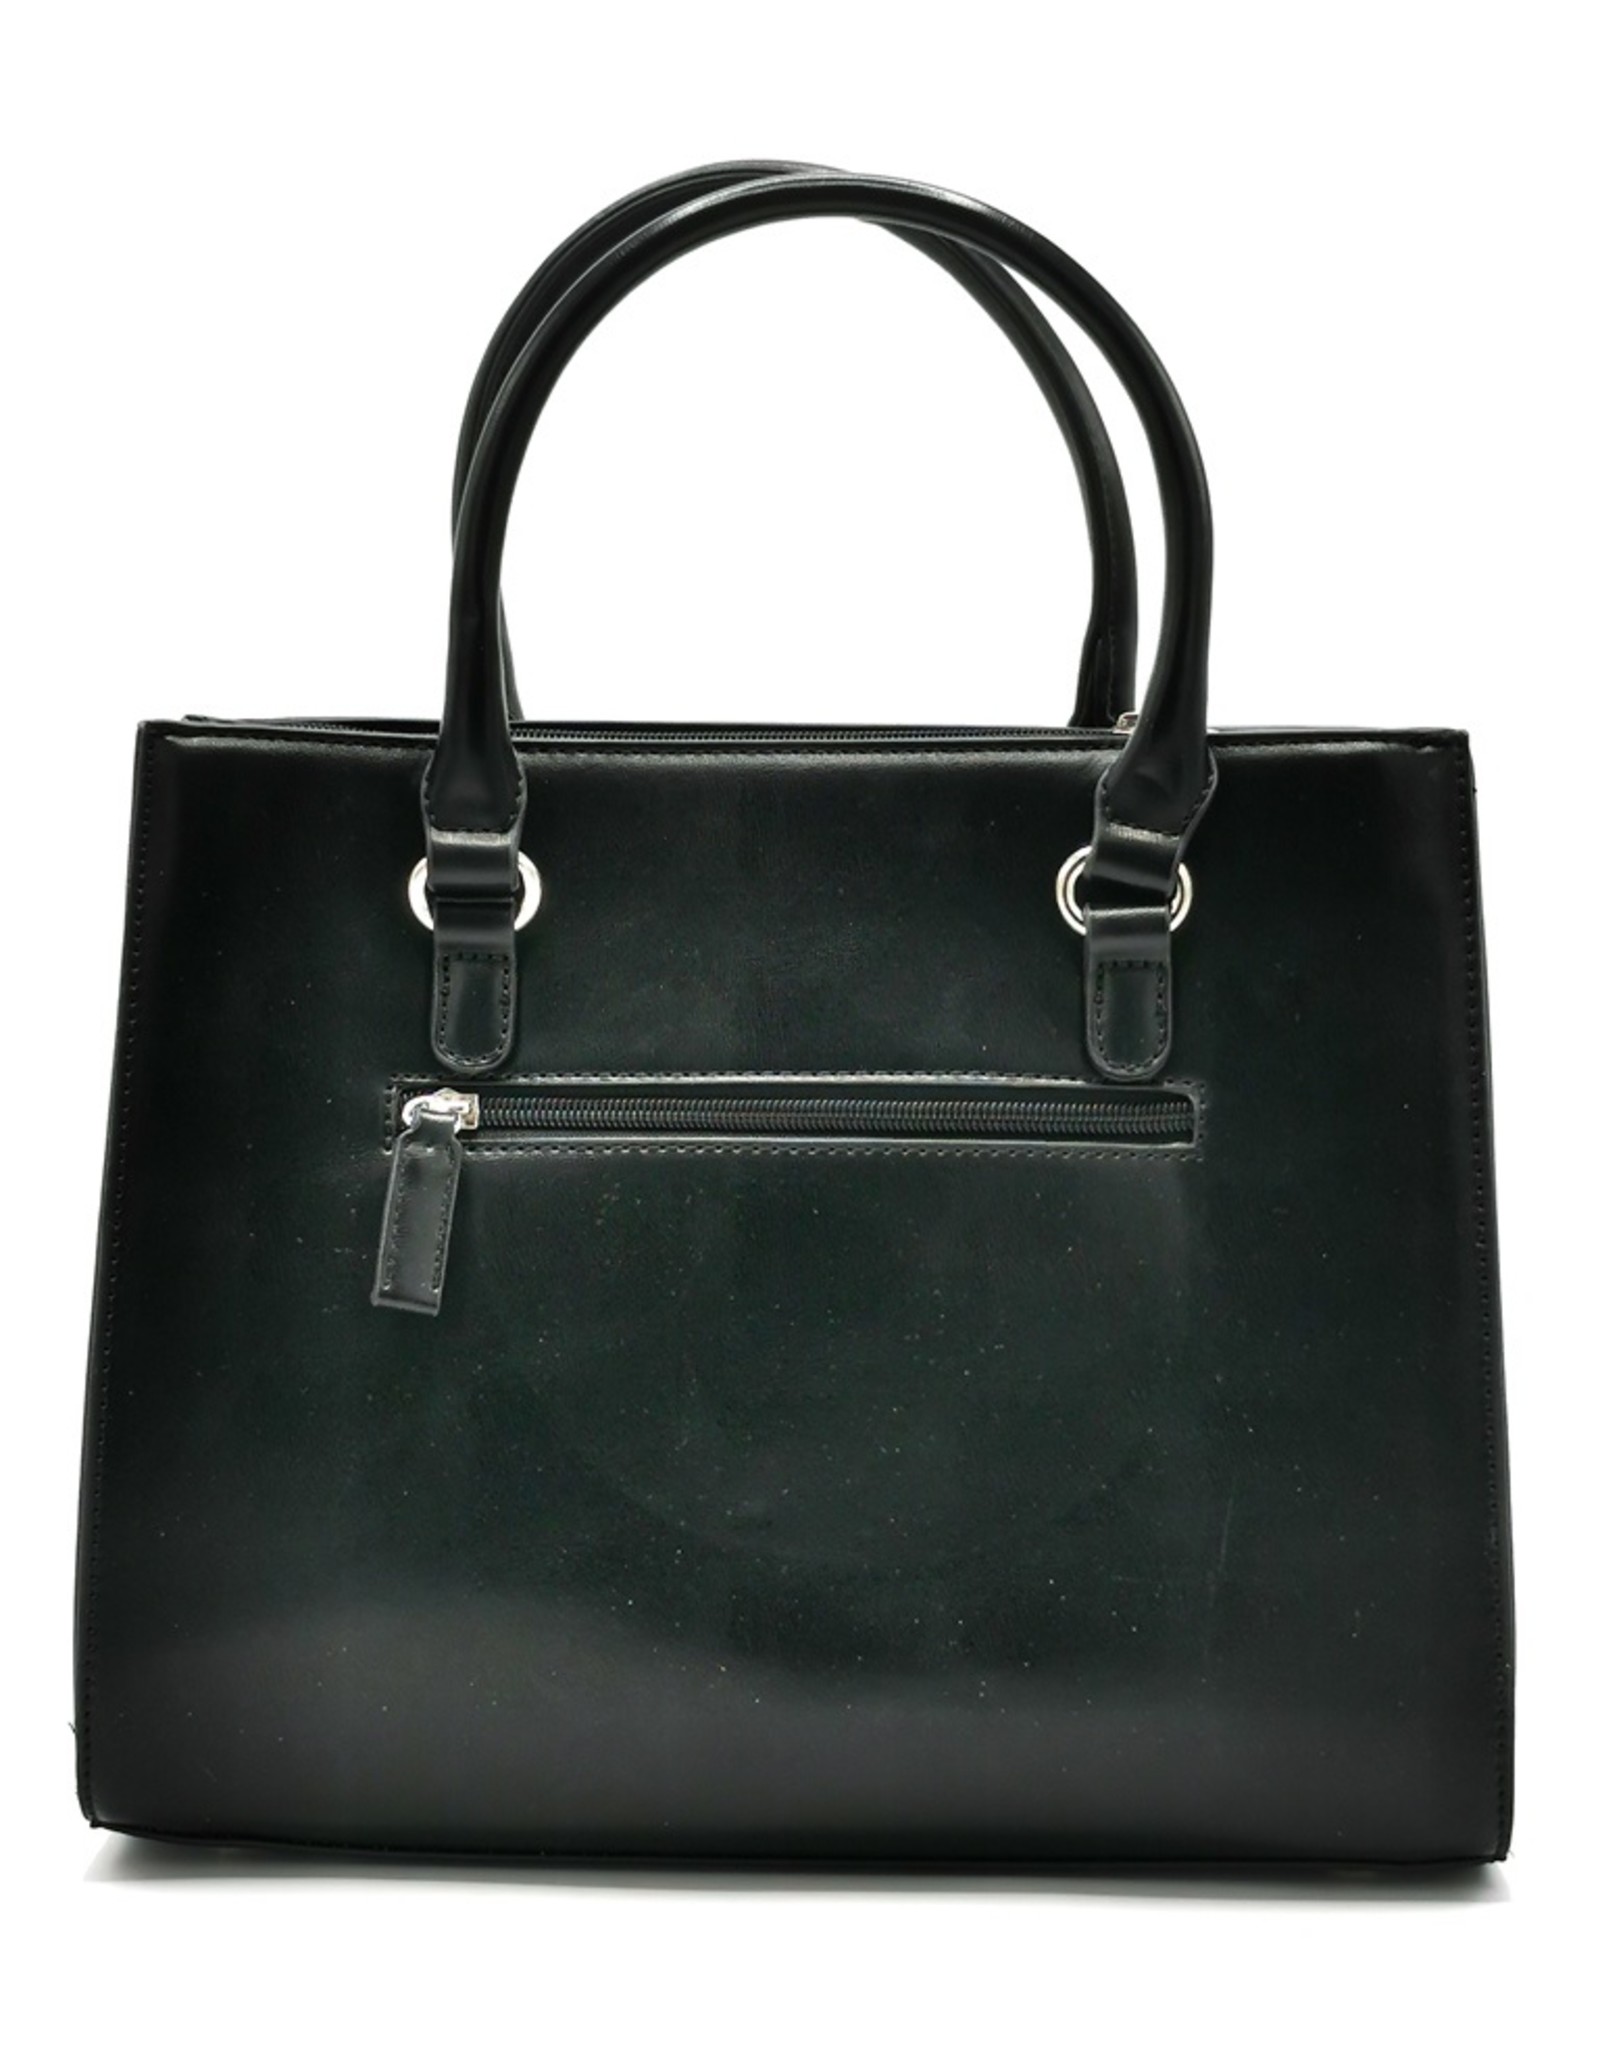 David Jones Fashion bags - David Jones Handbag Black-Grey